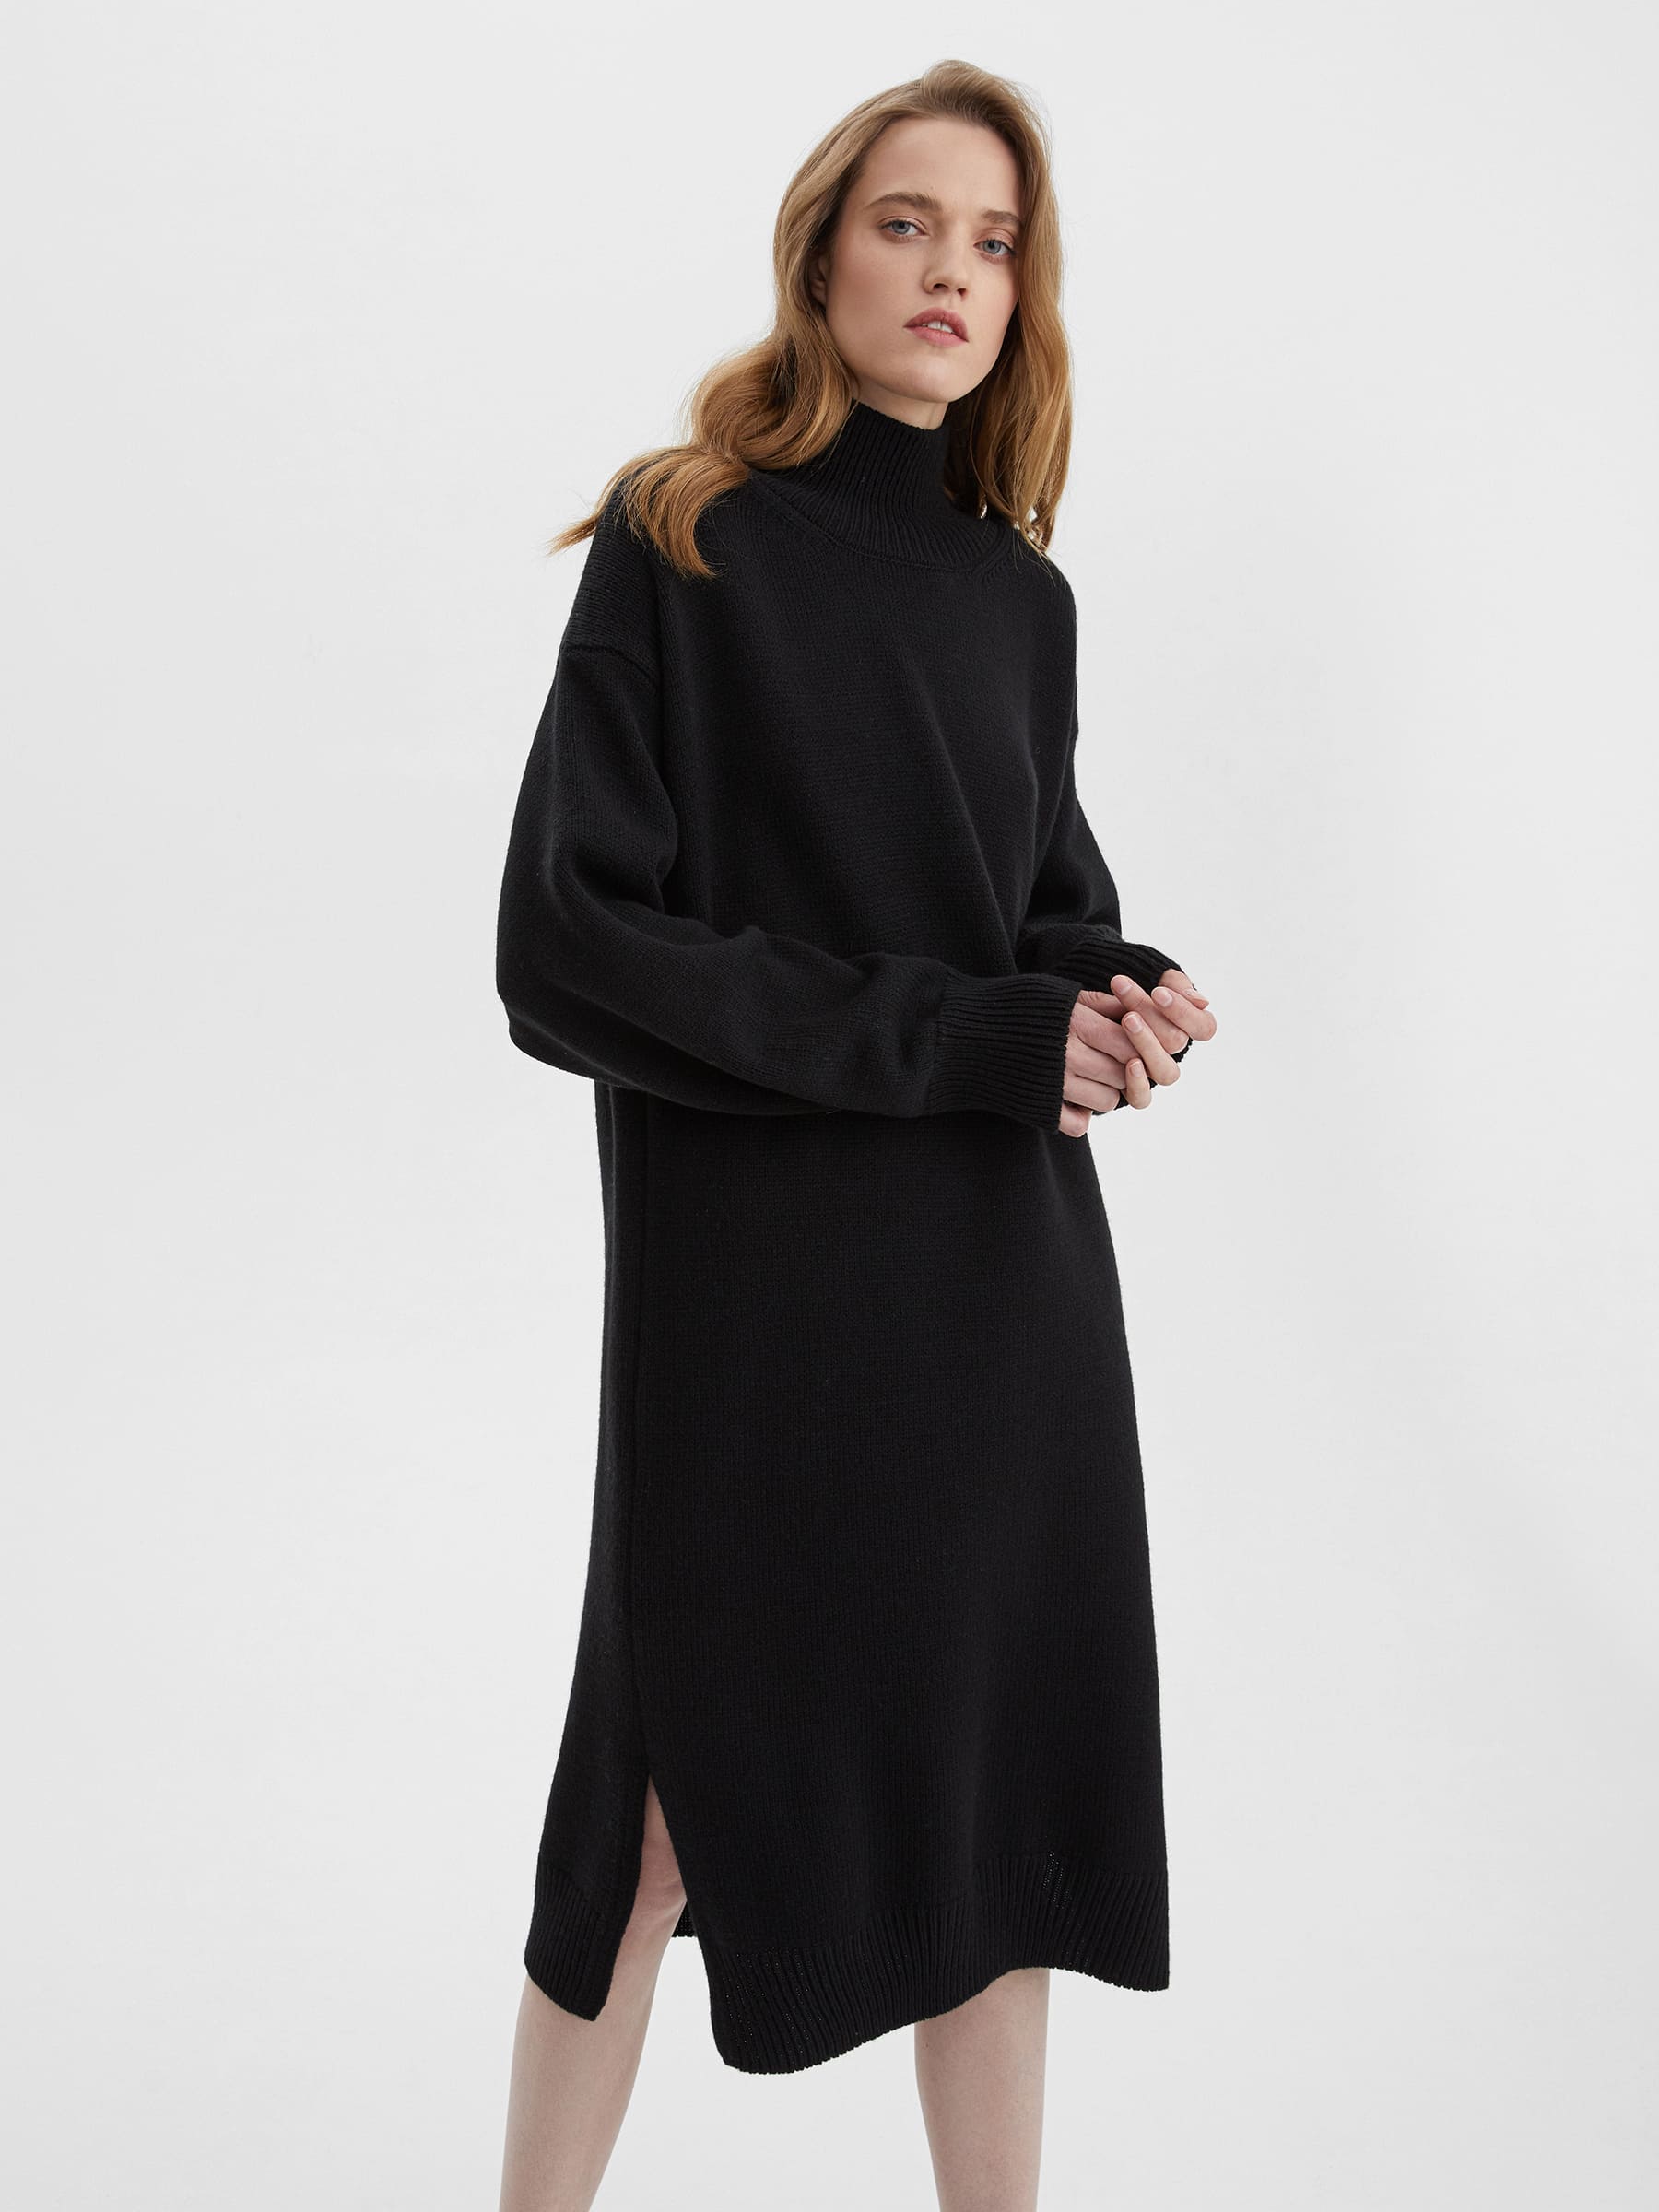 Платье свободного кроя вязаное, цвет – чёрный цена и фото